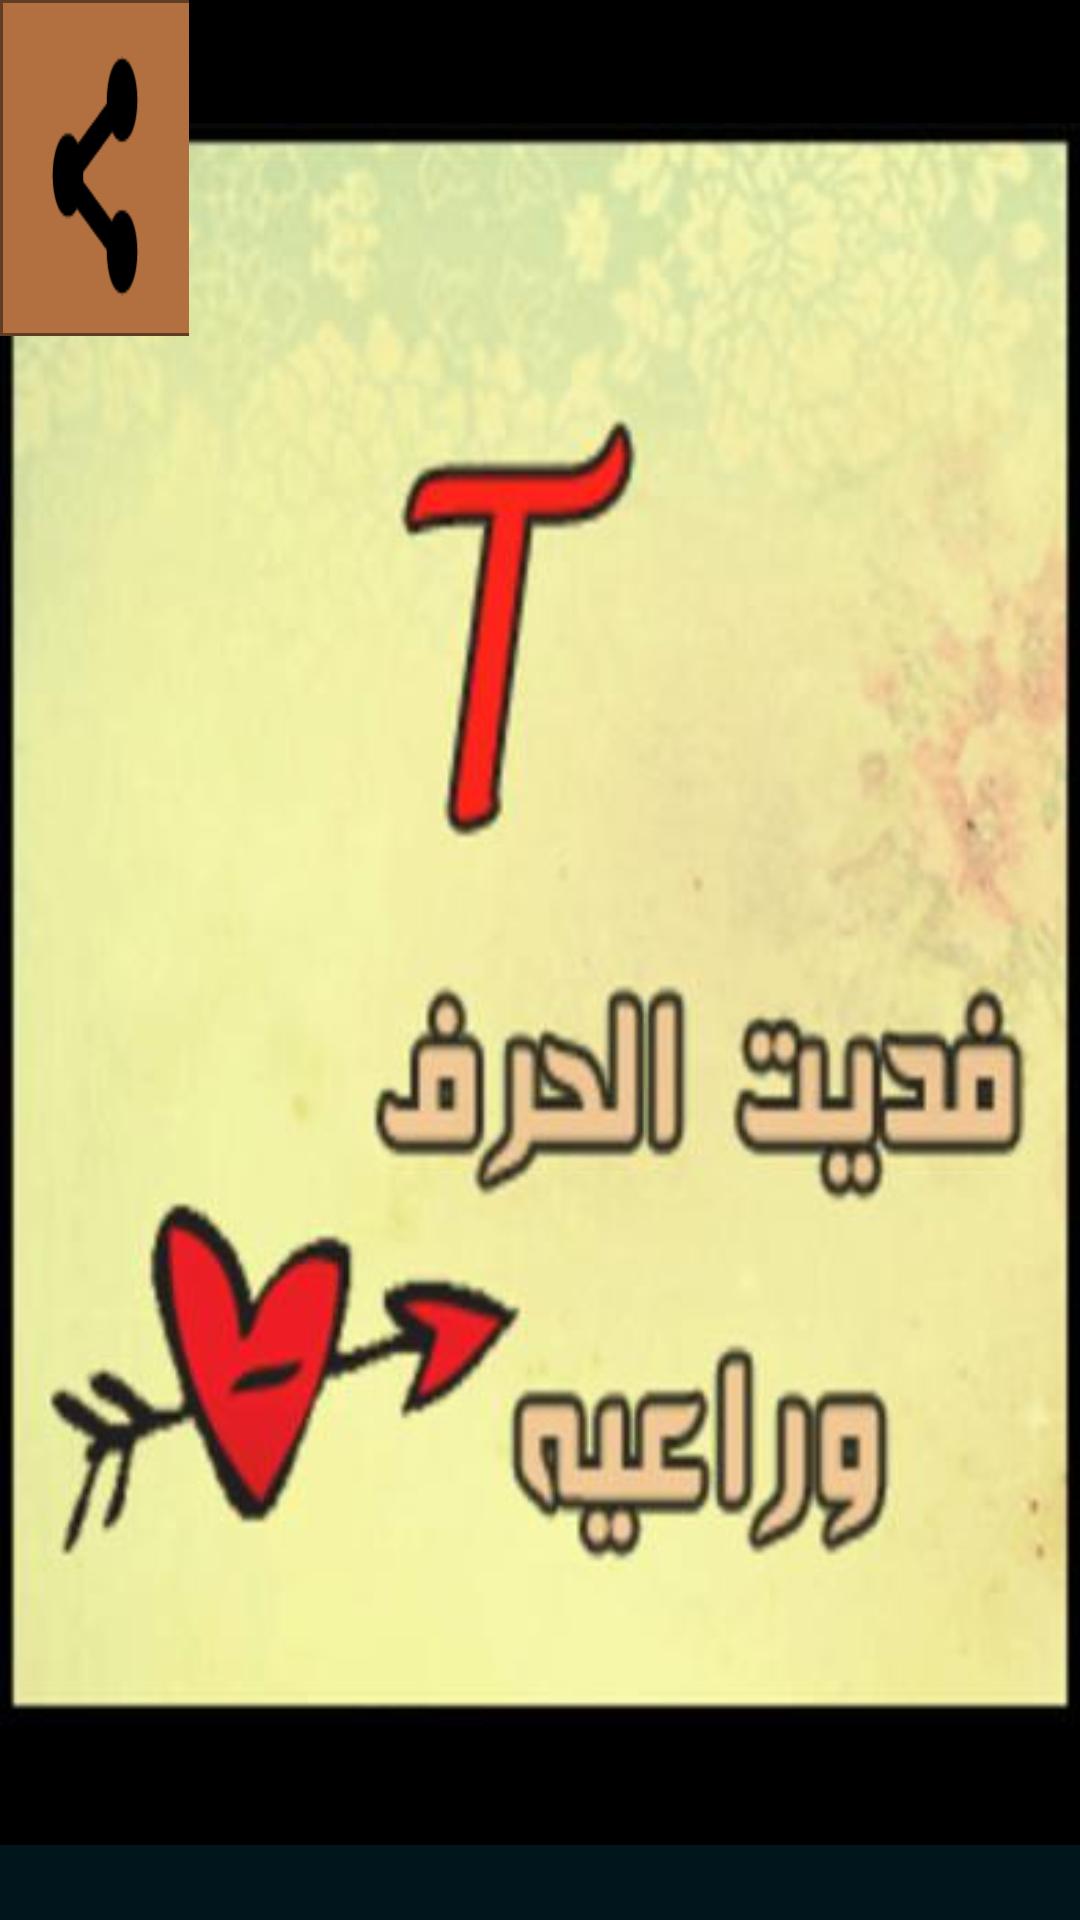 2481 صور حرف T - رمزيات مكتوب عليها K فهد ساكت